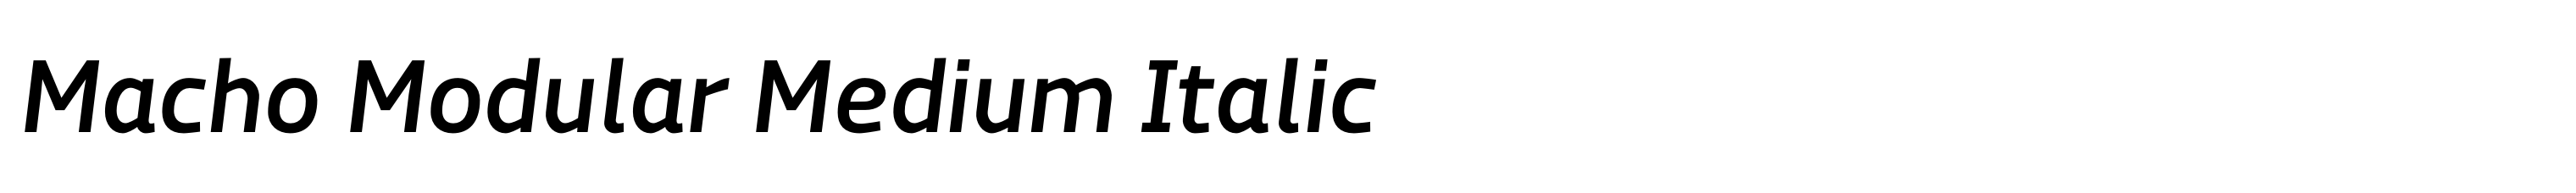 Macho Modular Medium Italic